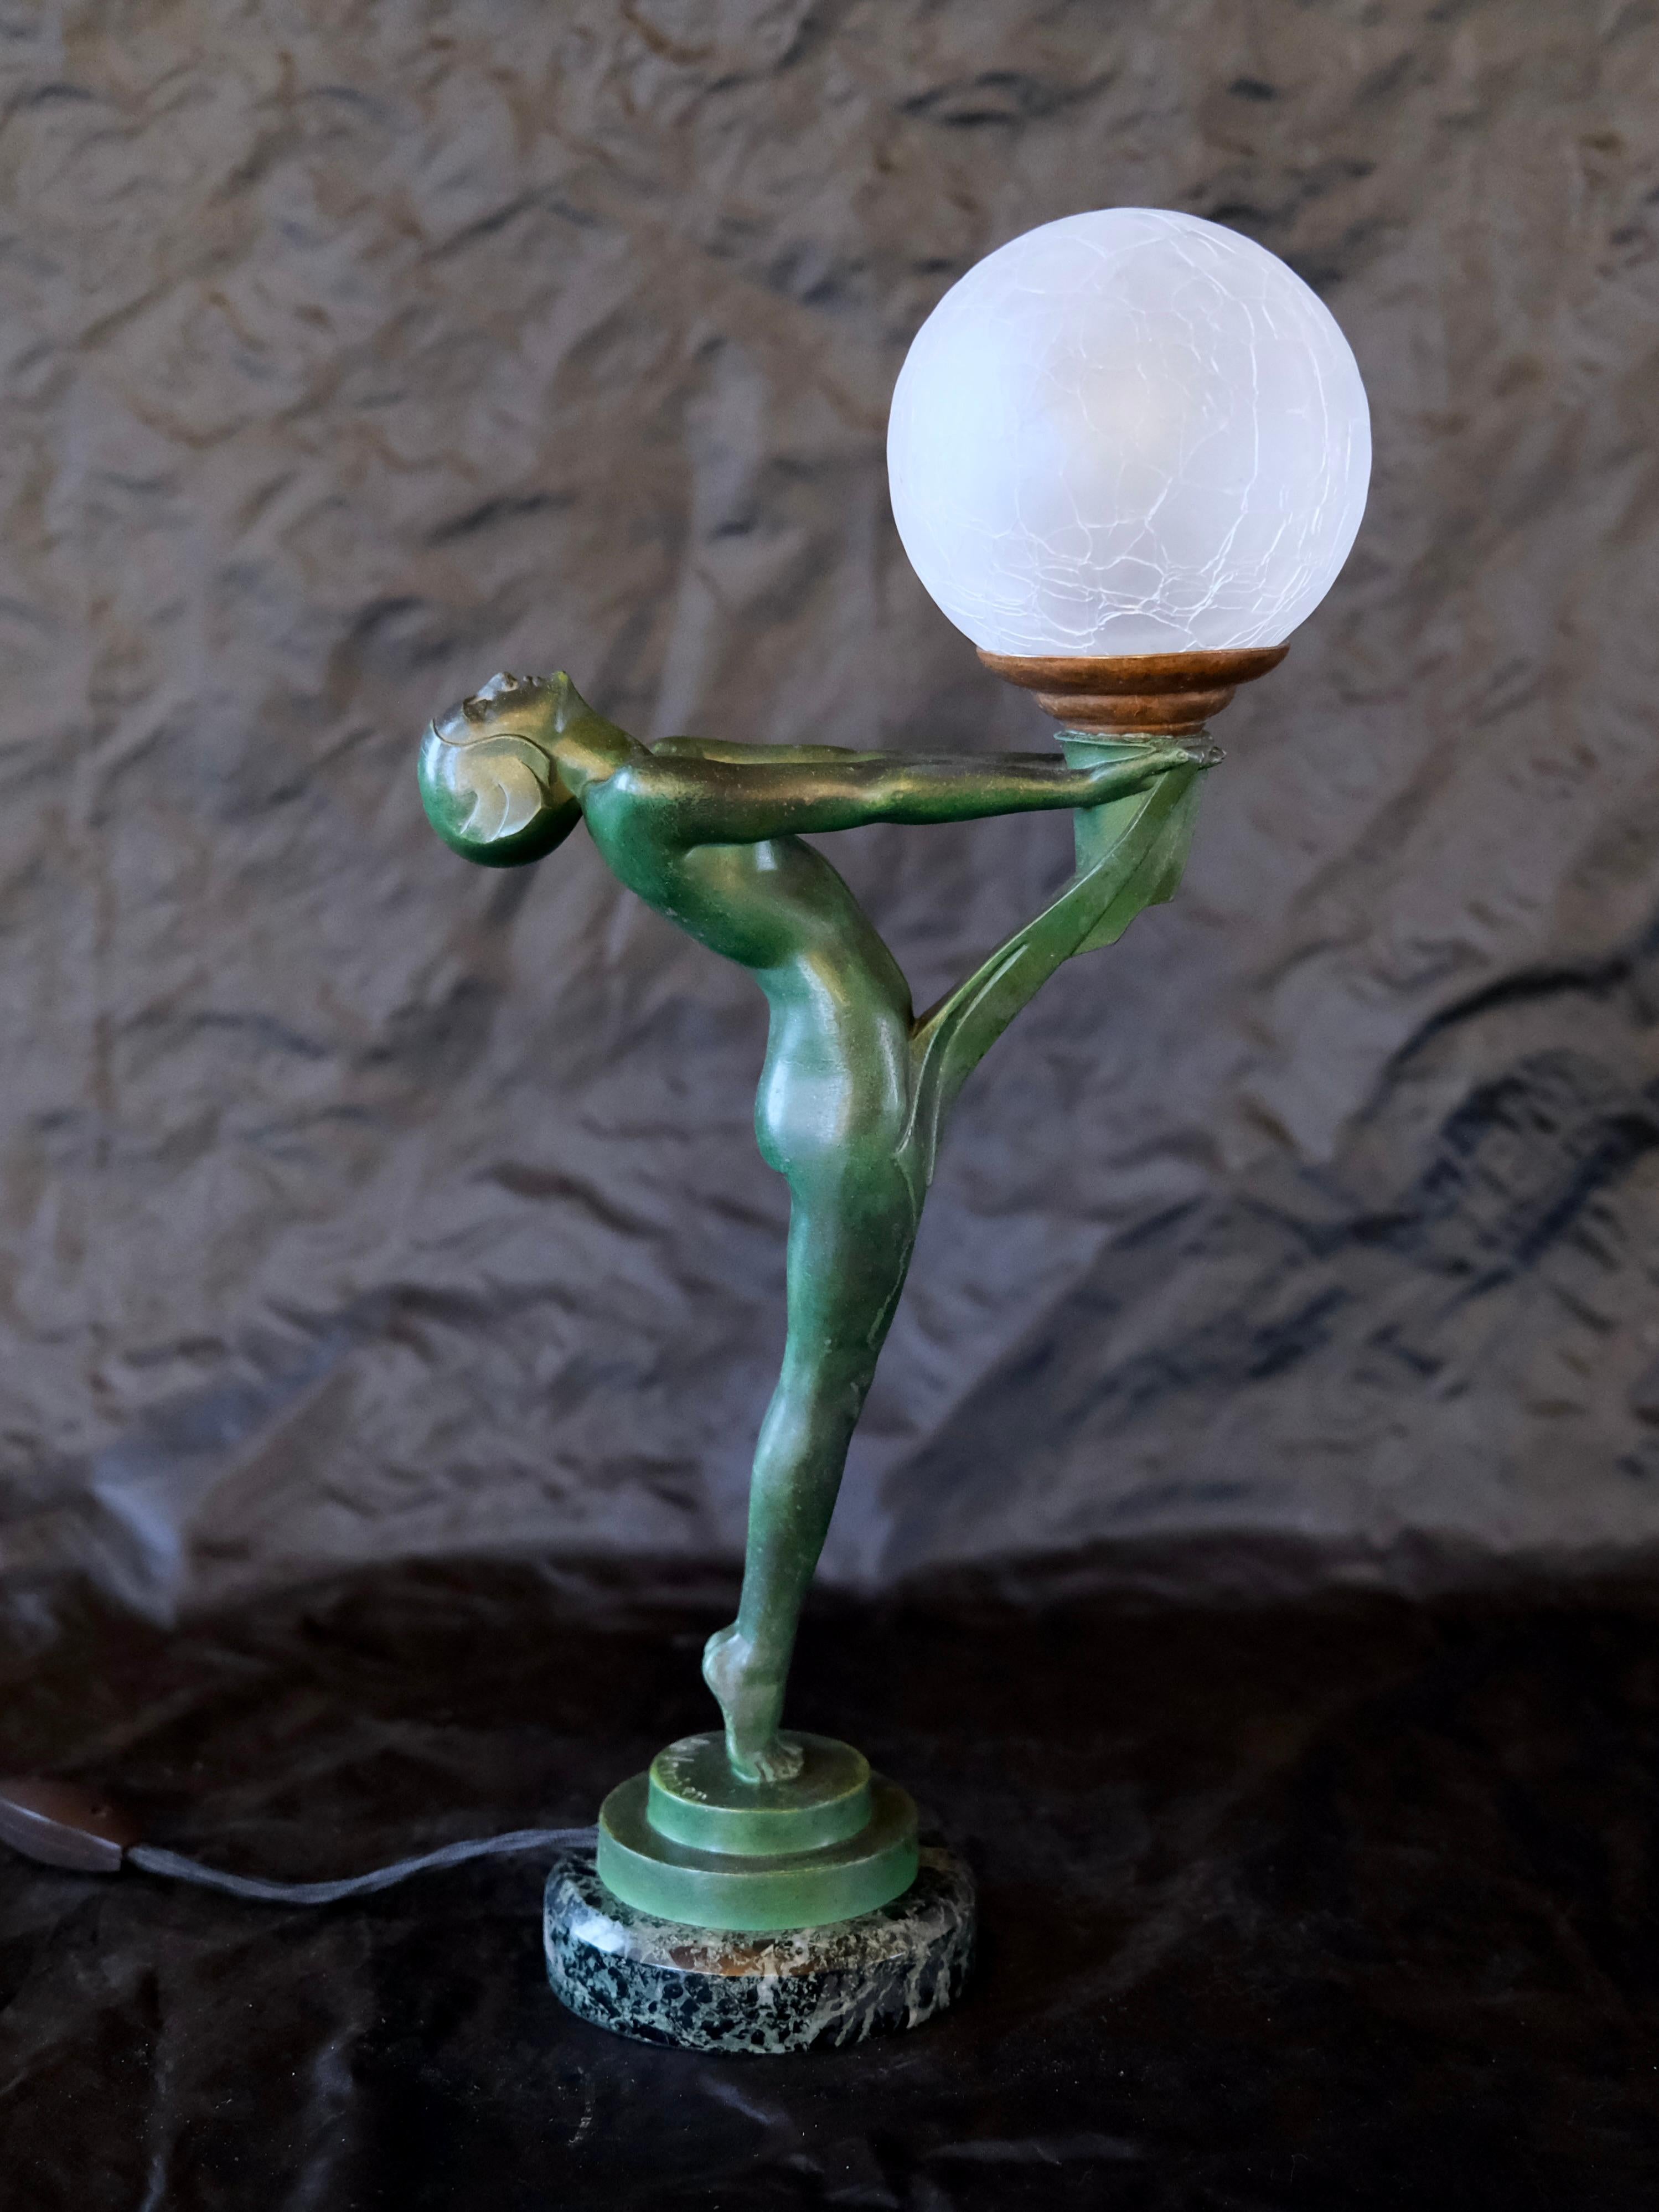 Patinated Important Art Deco Clarté Sculpture Lueur Lamp from the Art Deco Max Le Verrier